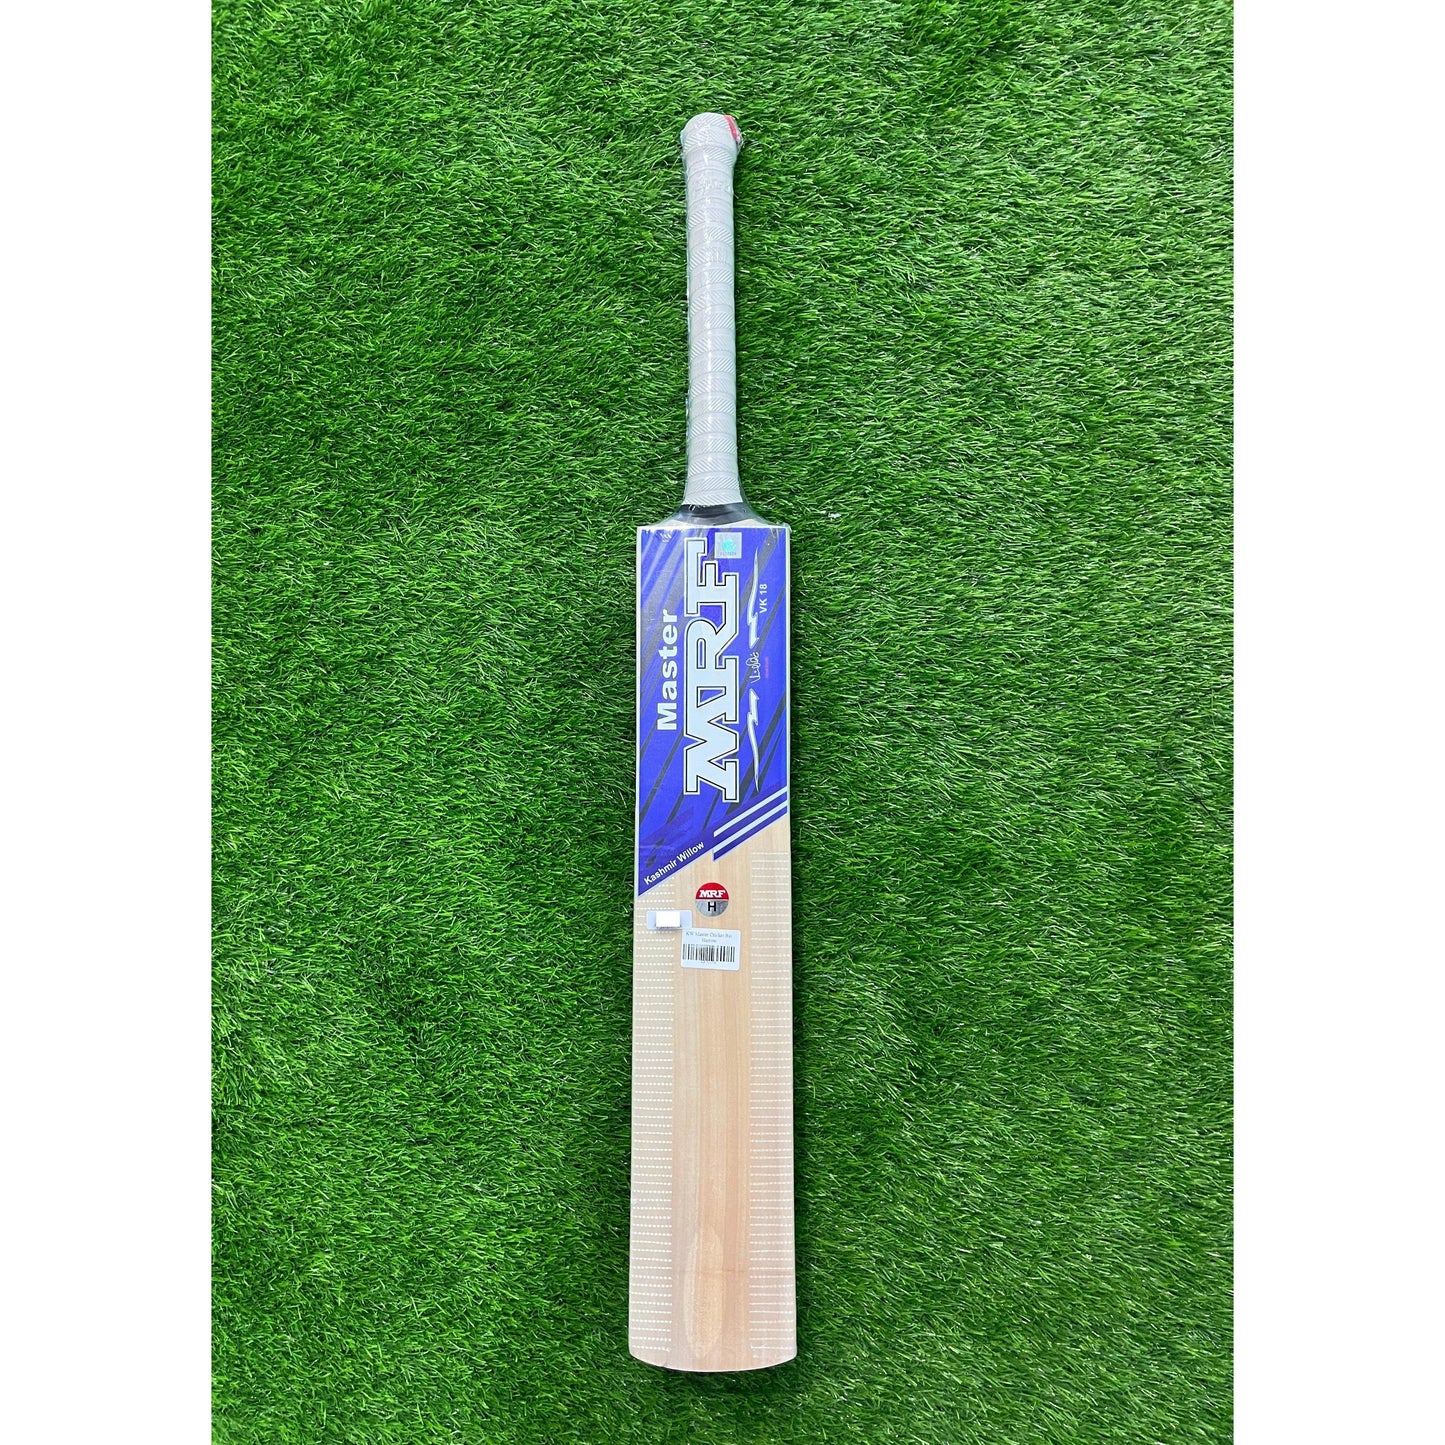 MRF KW Master Kashmir Willow Cricket Bat - Junior Size Harrow